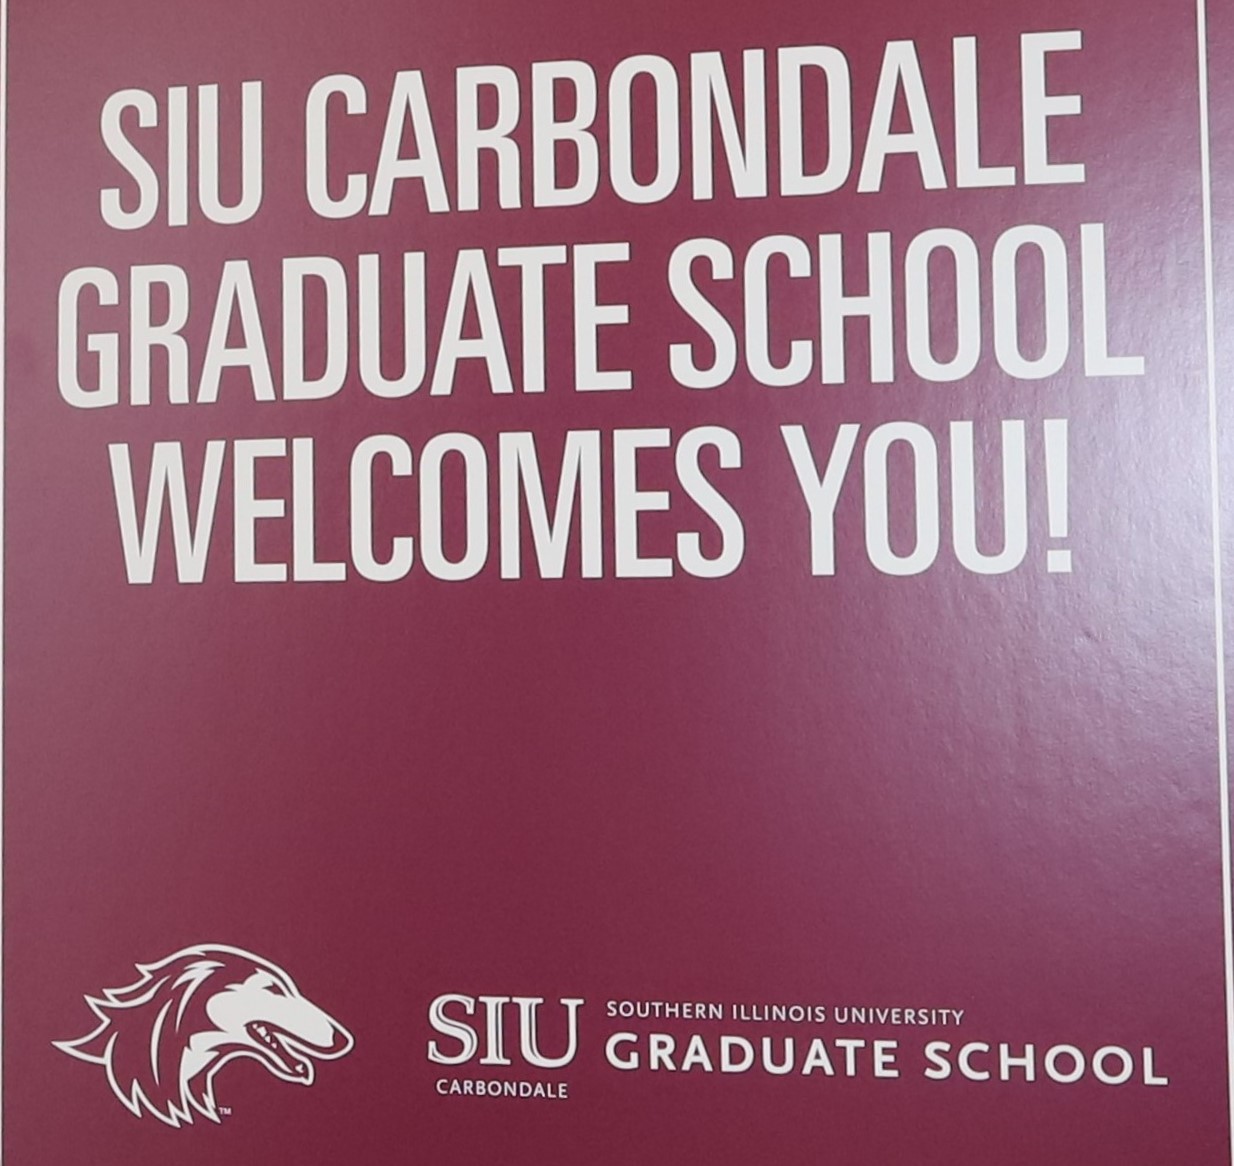 grad school welcome sign